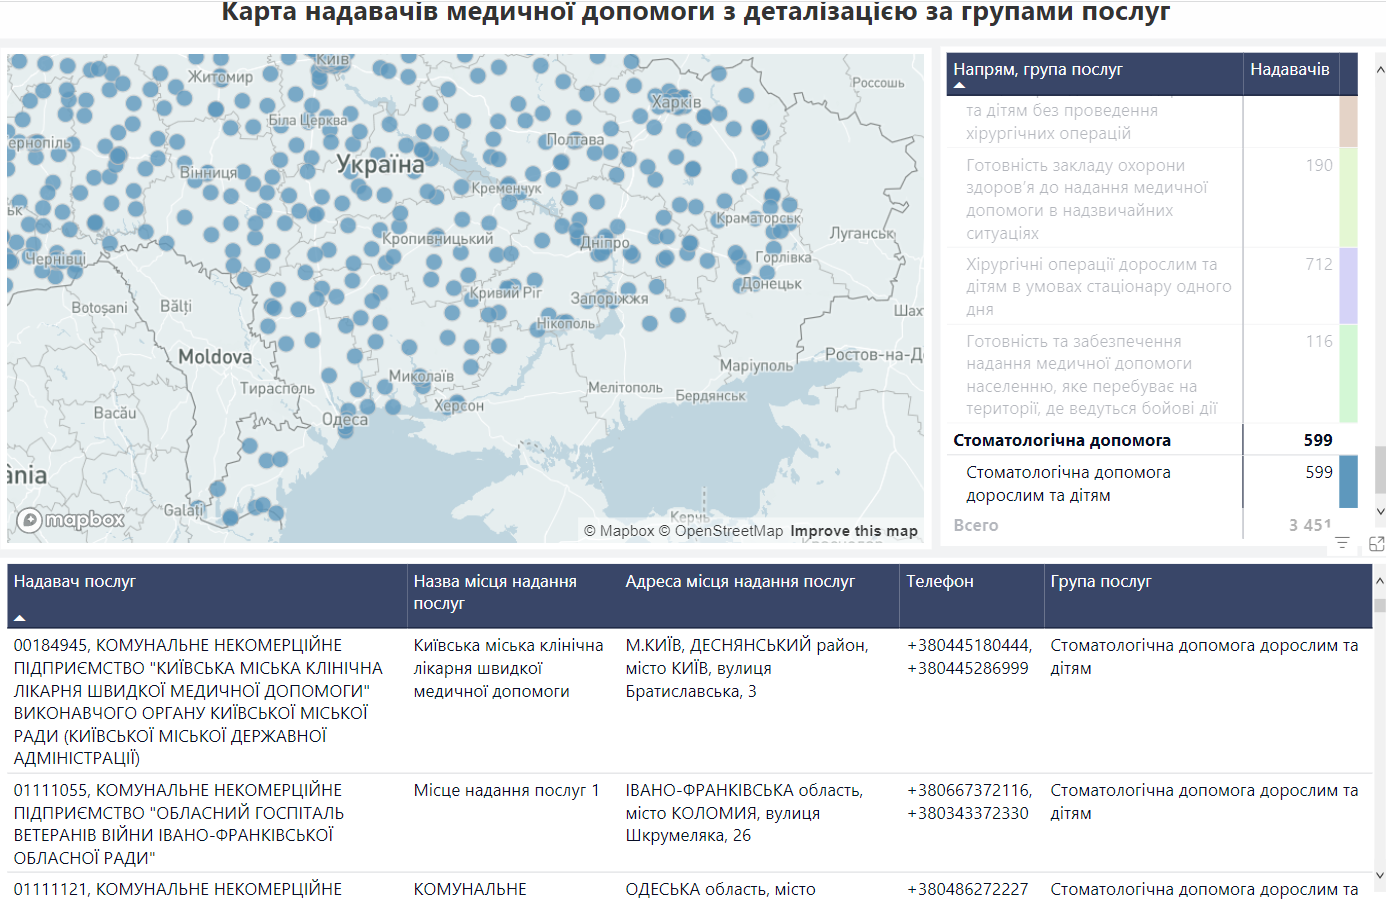 Почти 600 клиник: где именно украинцы могут получить бесплатную стоматологическую помощь